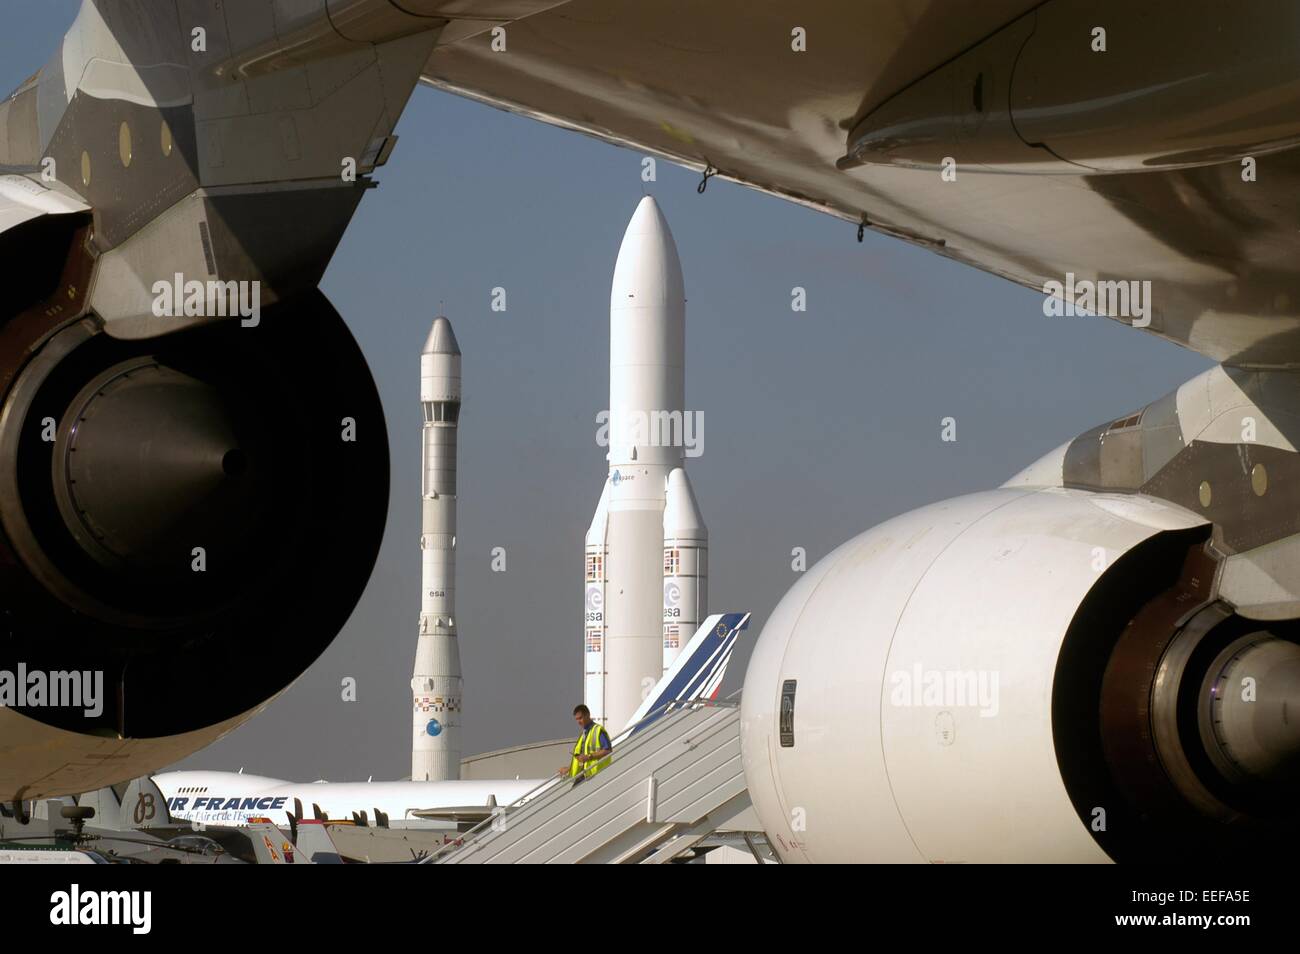 Des fusées Ariane exposés au Musée de l'aéronautique à l'aéroport de Paris Le Bourget Banque D'Images